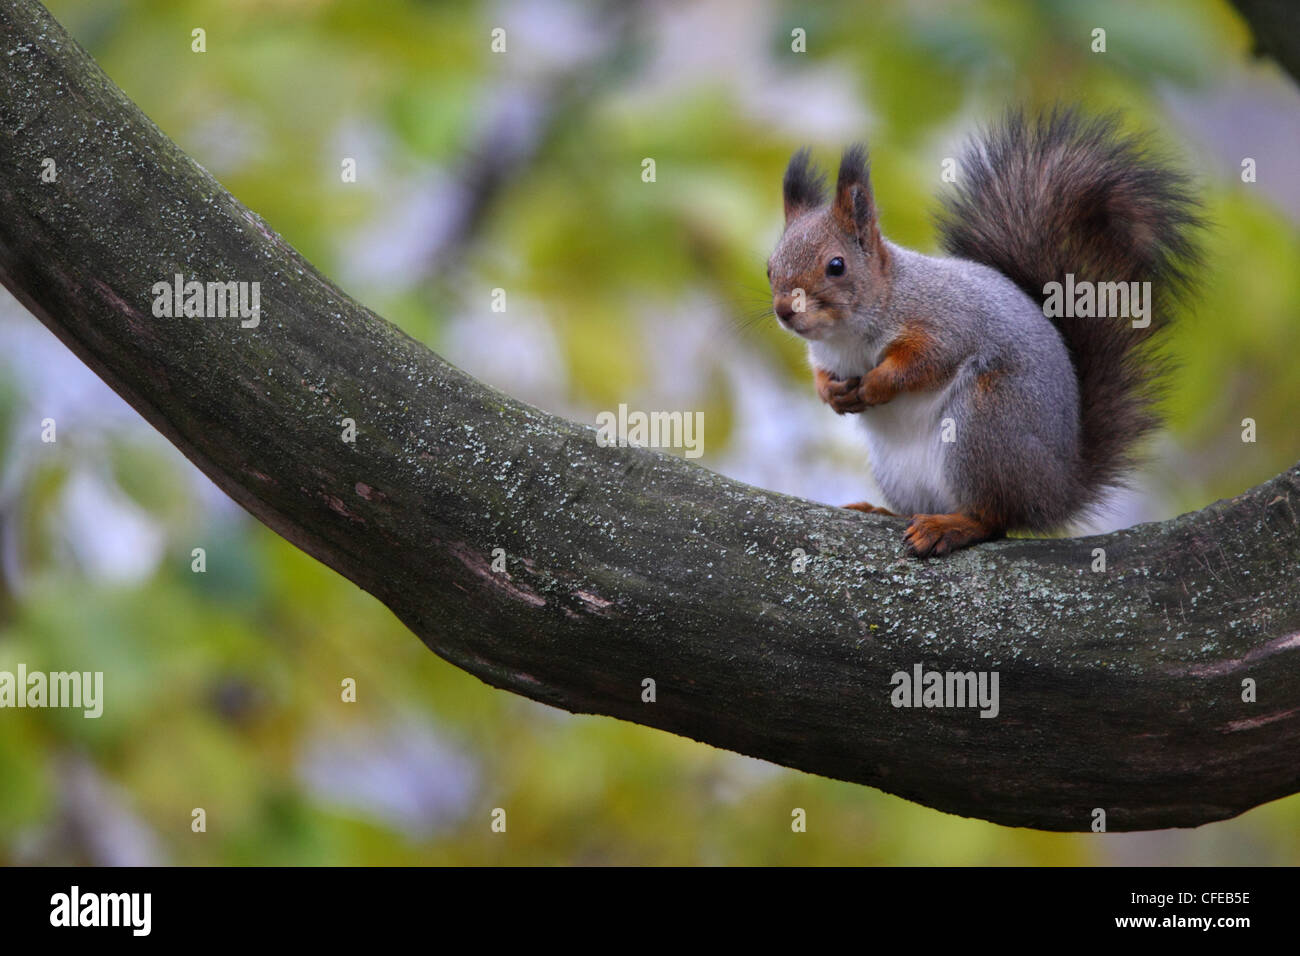 Red squirrel (Sciurus vulgaris) at autumn. Europe Stock Photo